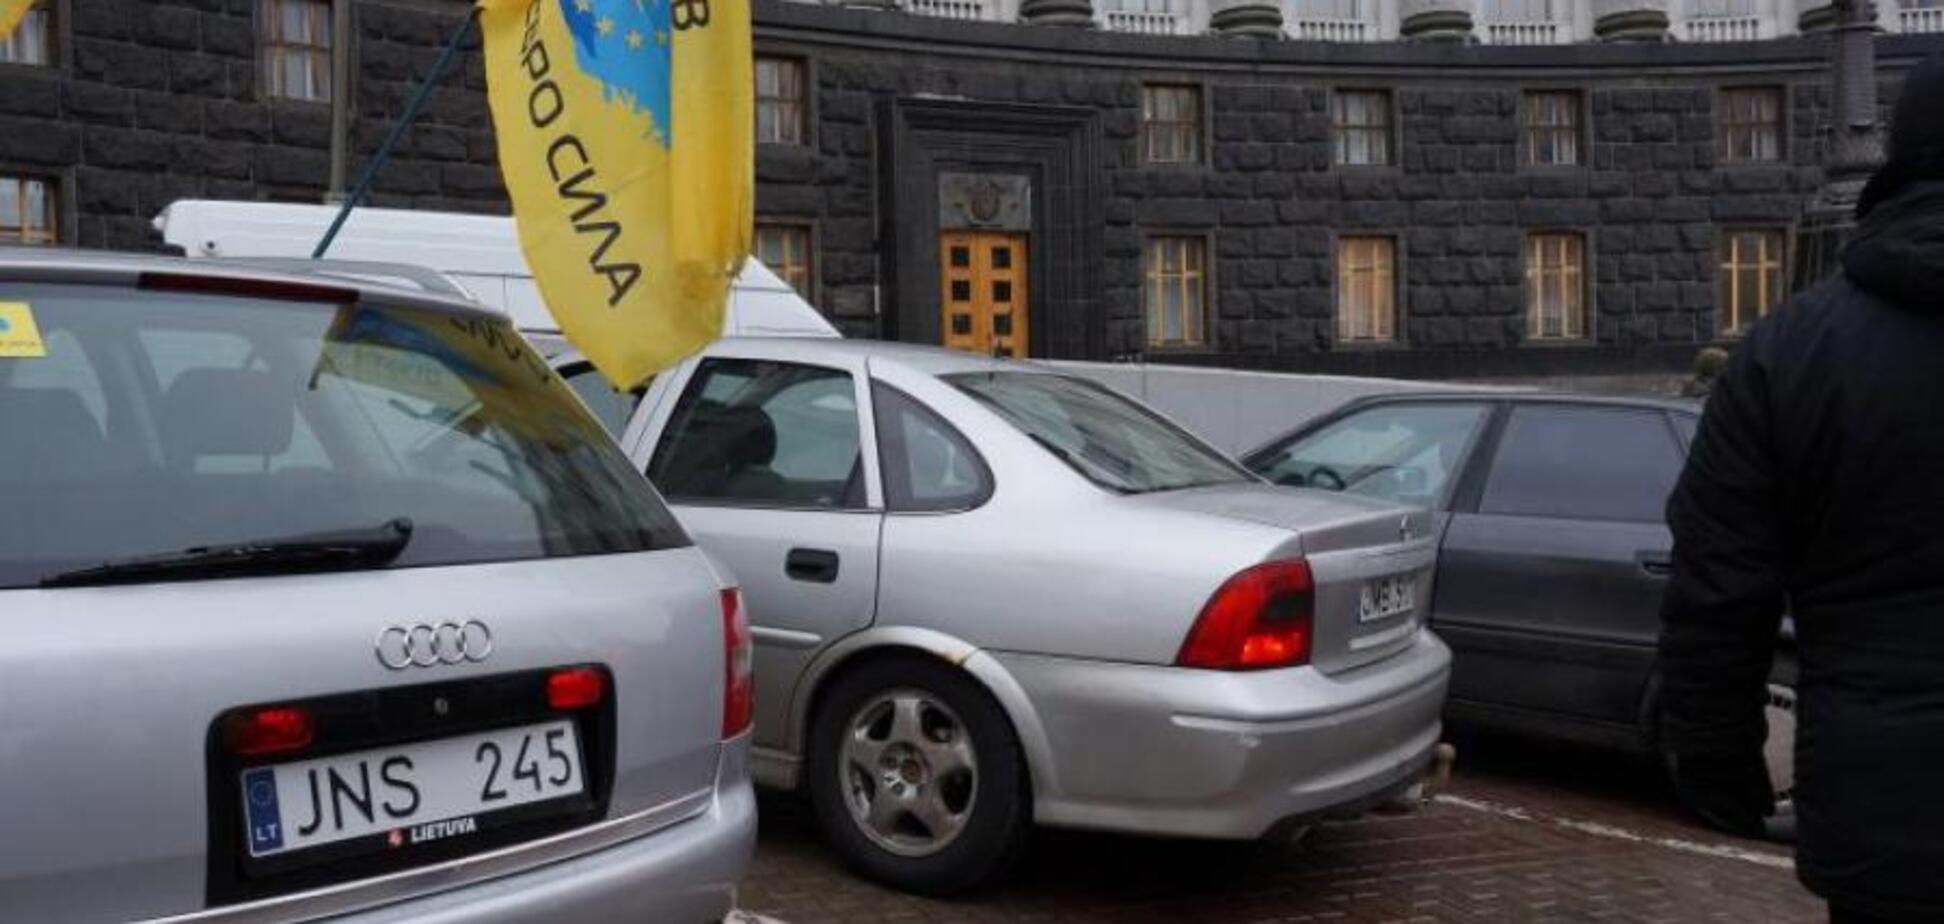 Єврономери в Україні: в новому законі знайшли пастку для водіїв